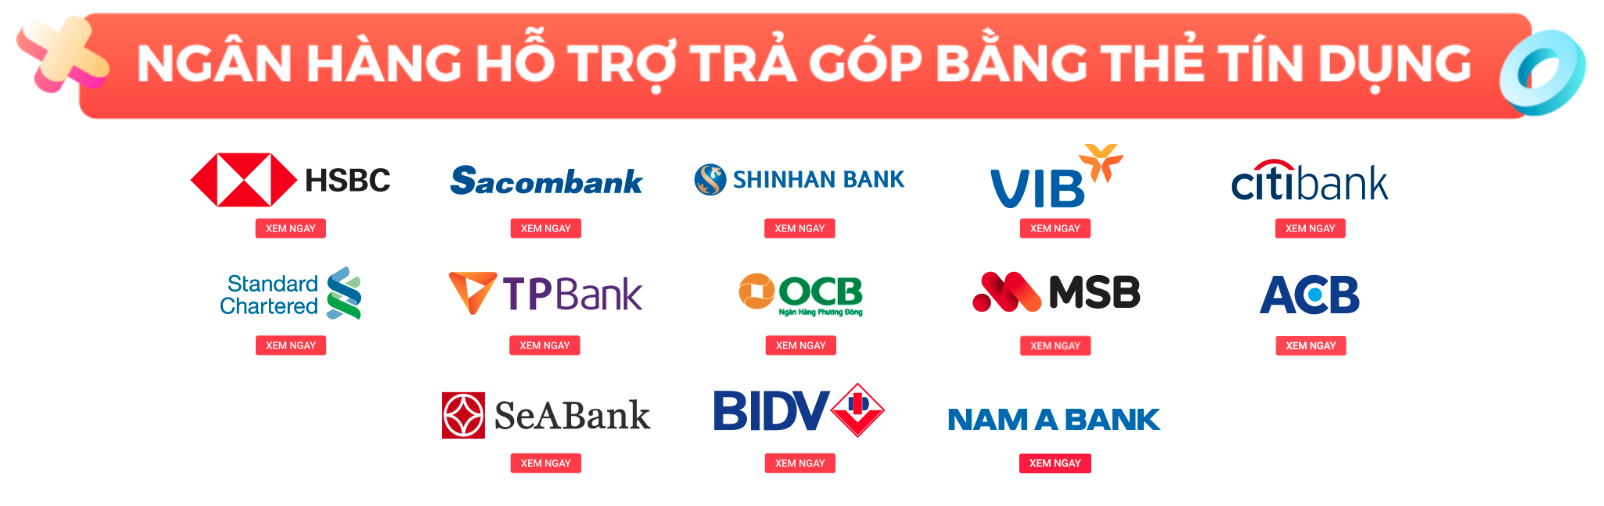 Các ngân hàng liên kết Tiki hỗ trợ trả góp 0%